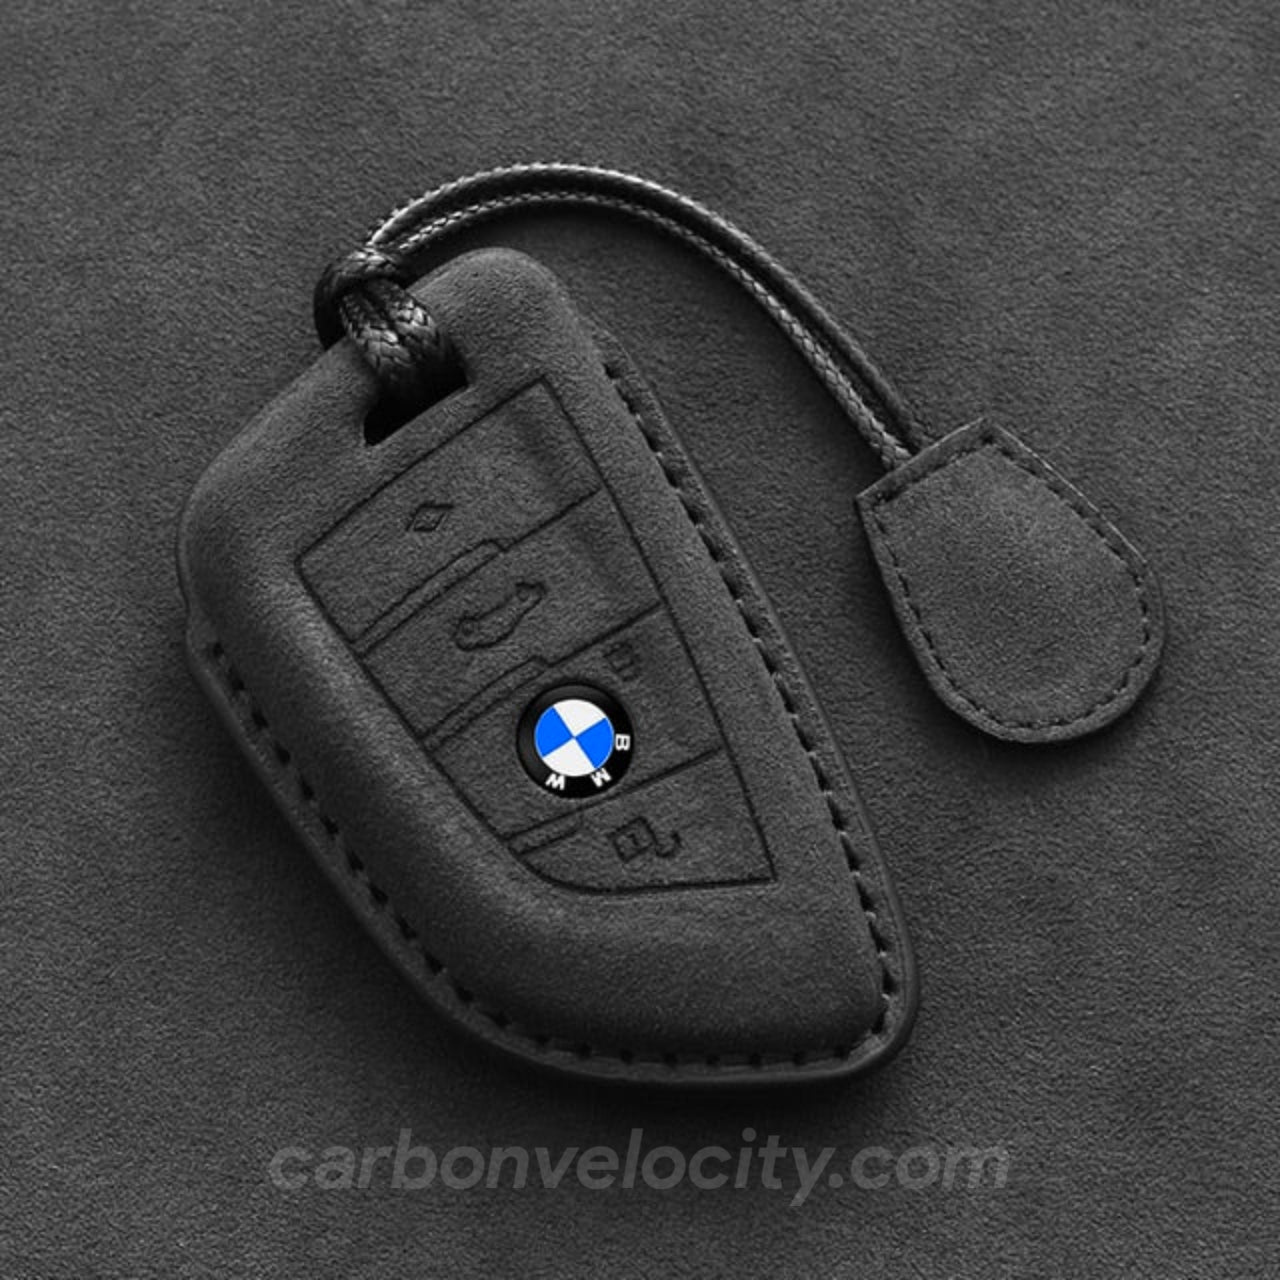 http://carbonvelocity.com/cdn/shop/files/premium-leather-bmw-car-key-case-481652.jpg?v=1695797221